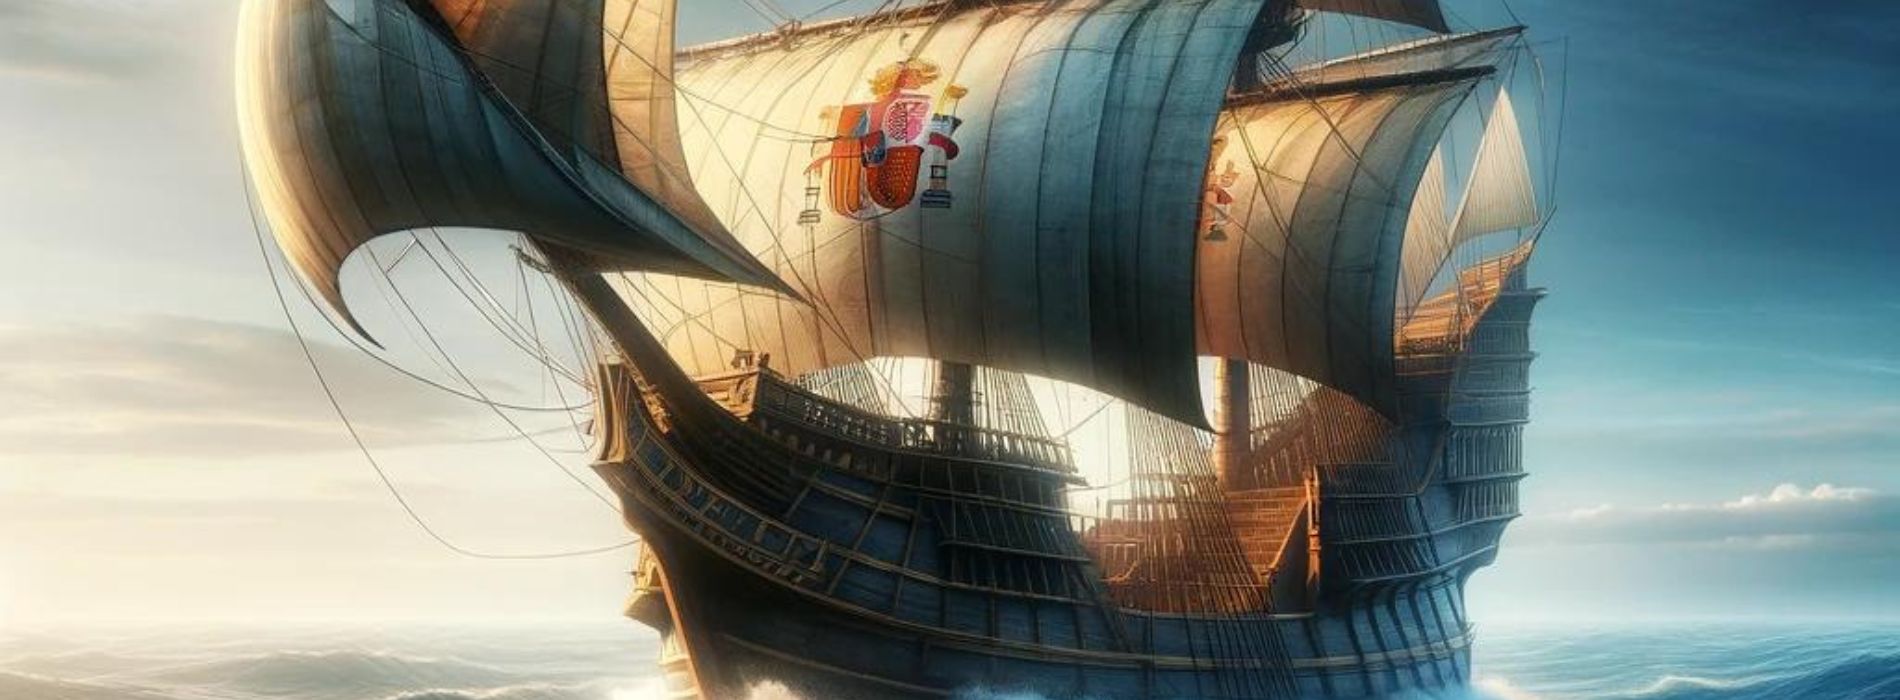 Kolumbus-Boot-fährt-in-die-neue-Welt